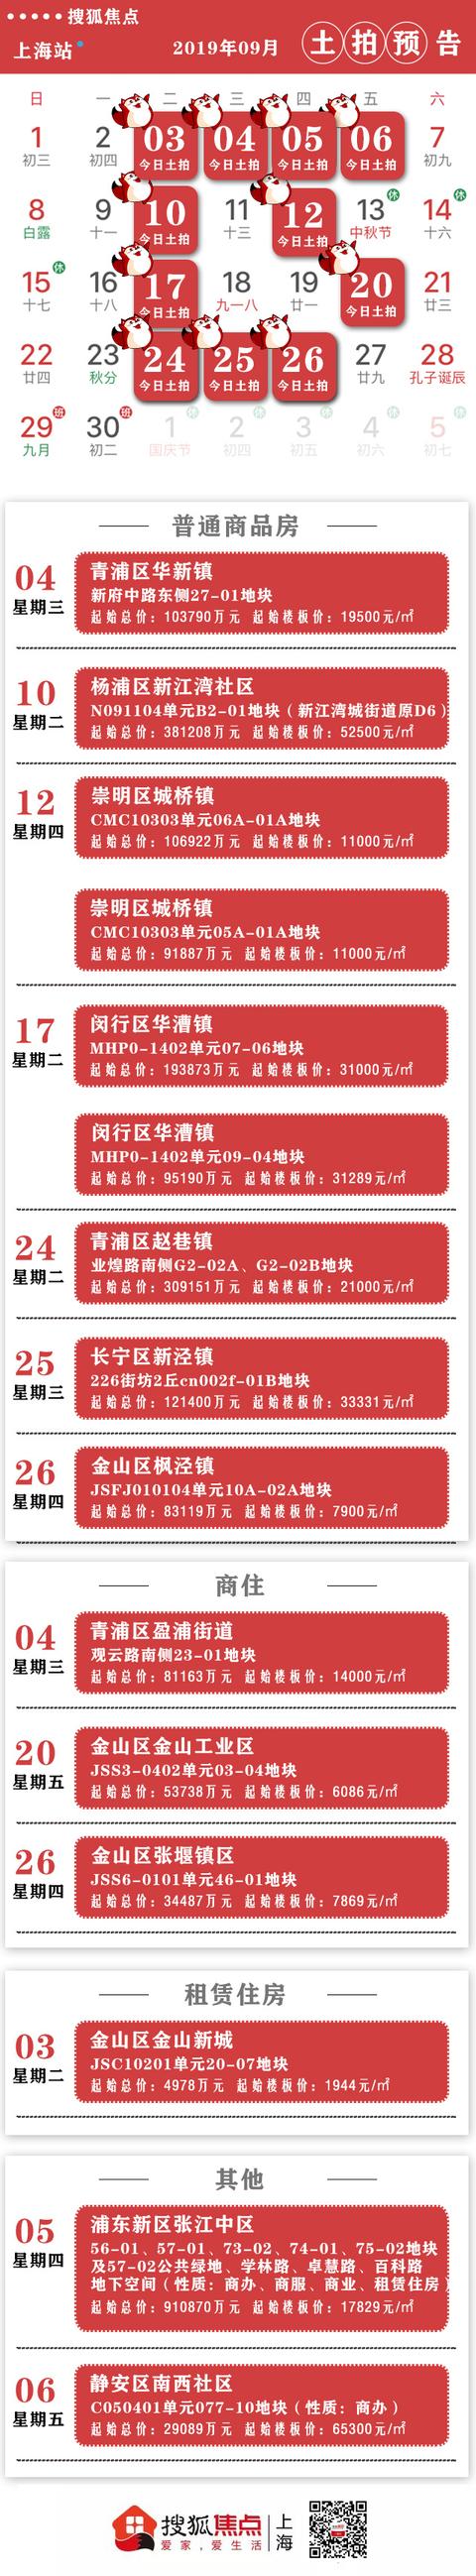 上海9月土拍日历：15幅地块集中出让 起始总价超260亿